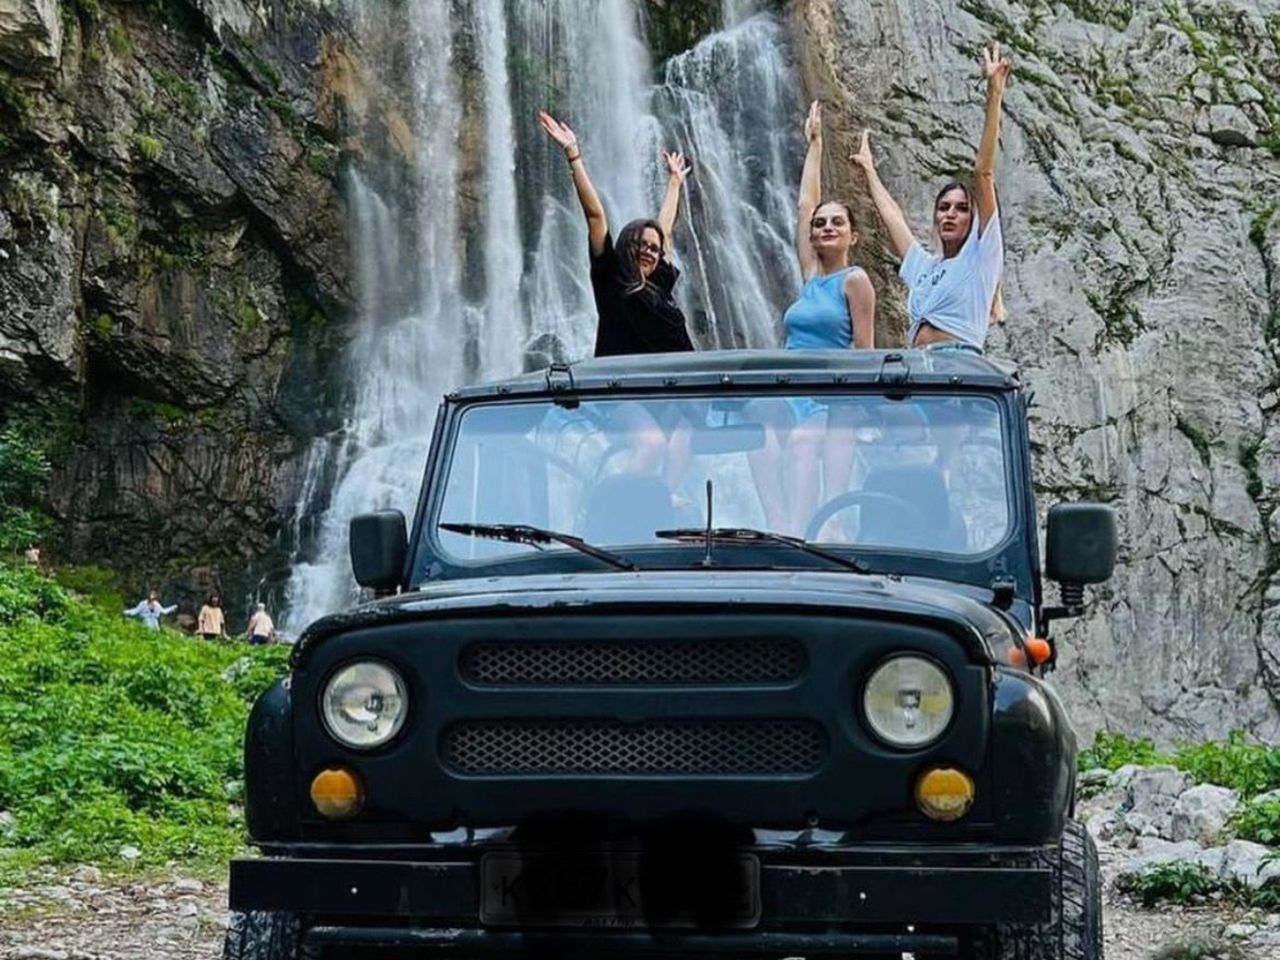 Джип-тур к Гегскому водопаду в Абхазии | Цена 2660₽, отзывы, описание экскурсии